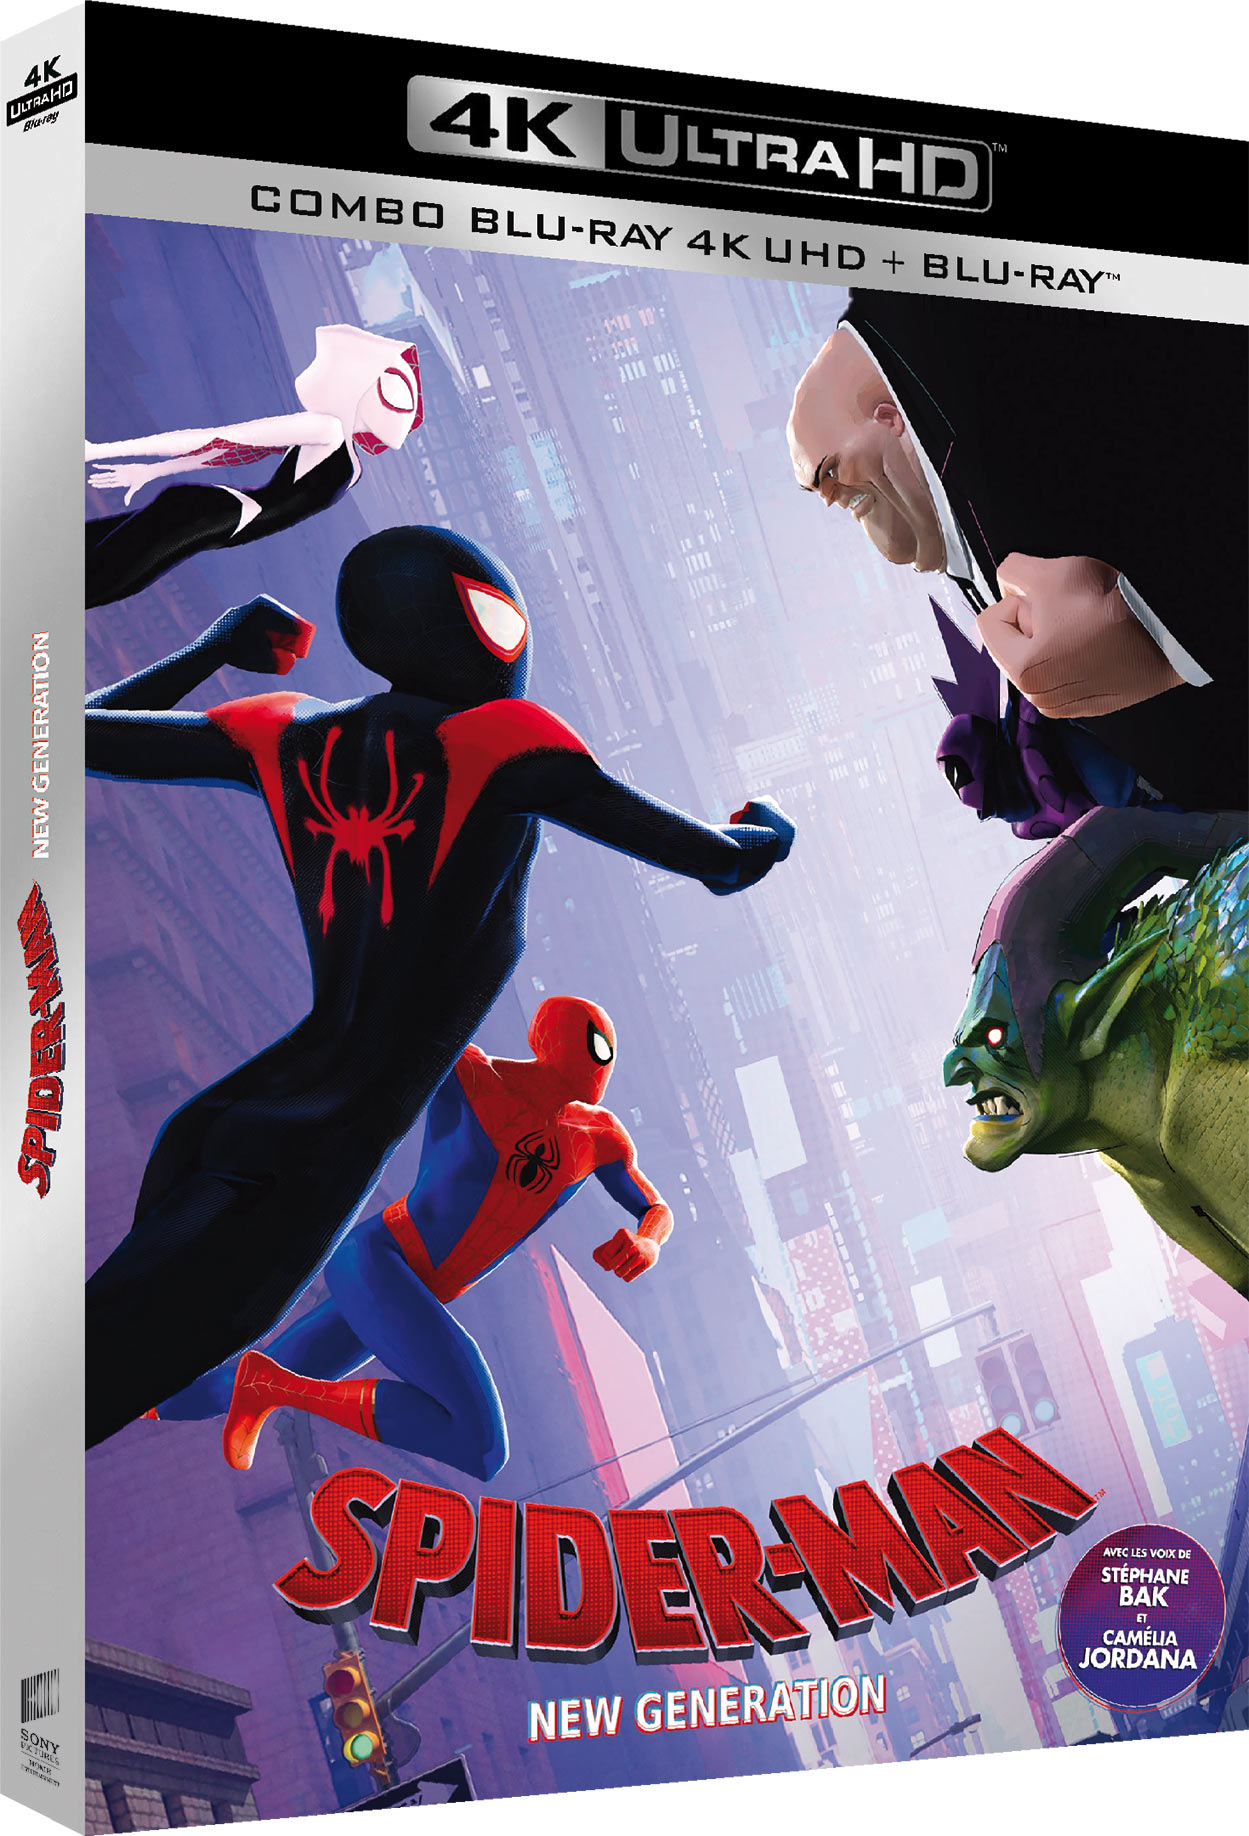 Spider-Man : New Generation - 4K Ultra HD + Blu-ray 3D + Blu-ray